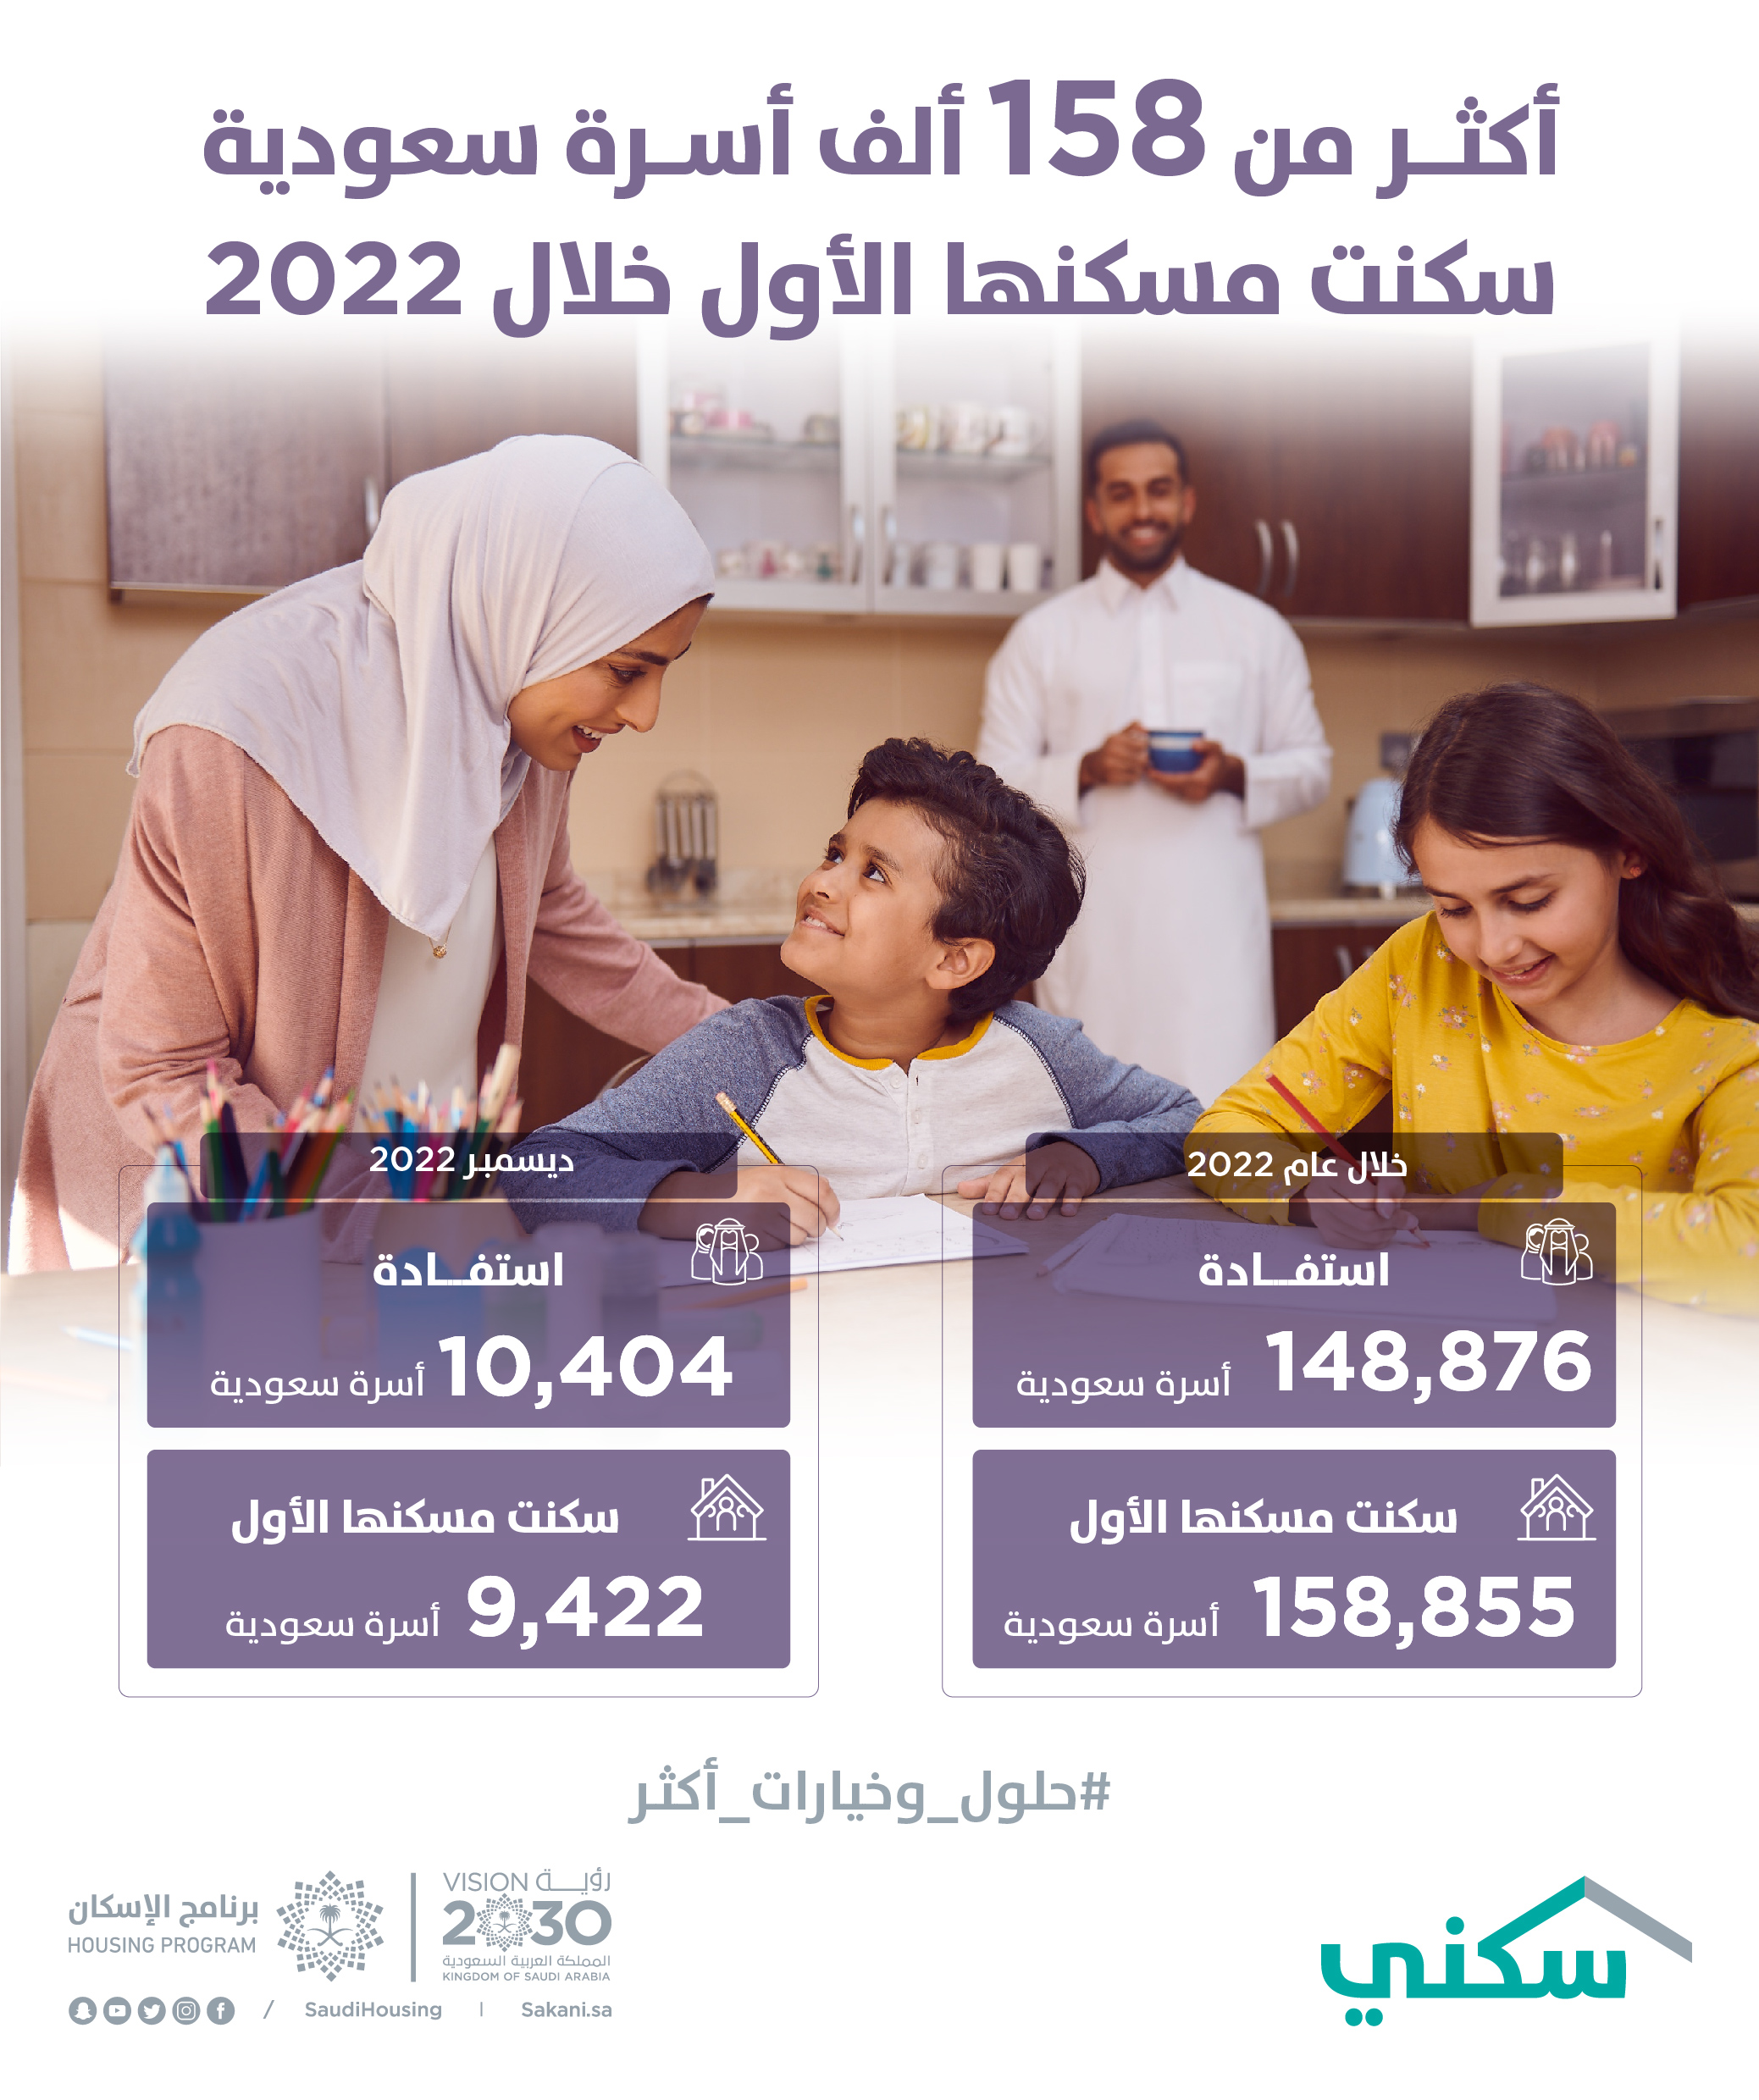 "سكني": أكثر من 158 ألف أسرة سعودية سكنت مسكنها الأول في عام 2022